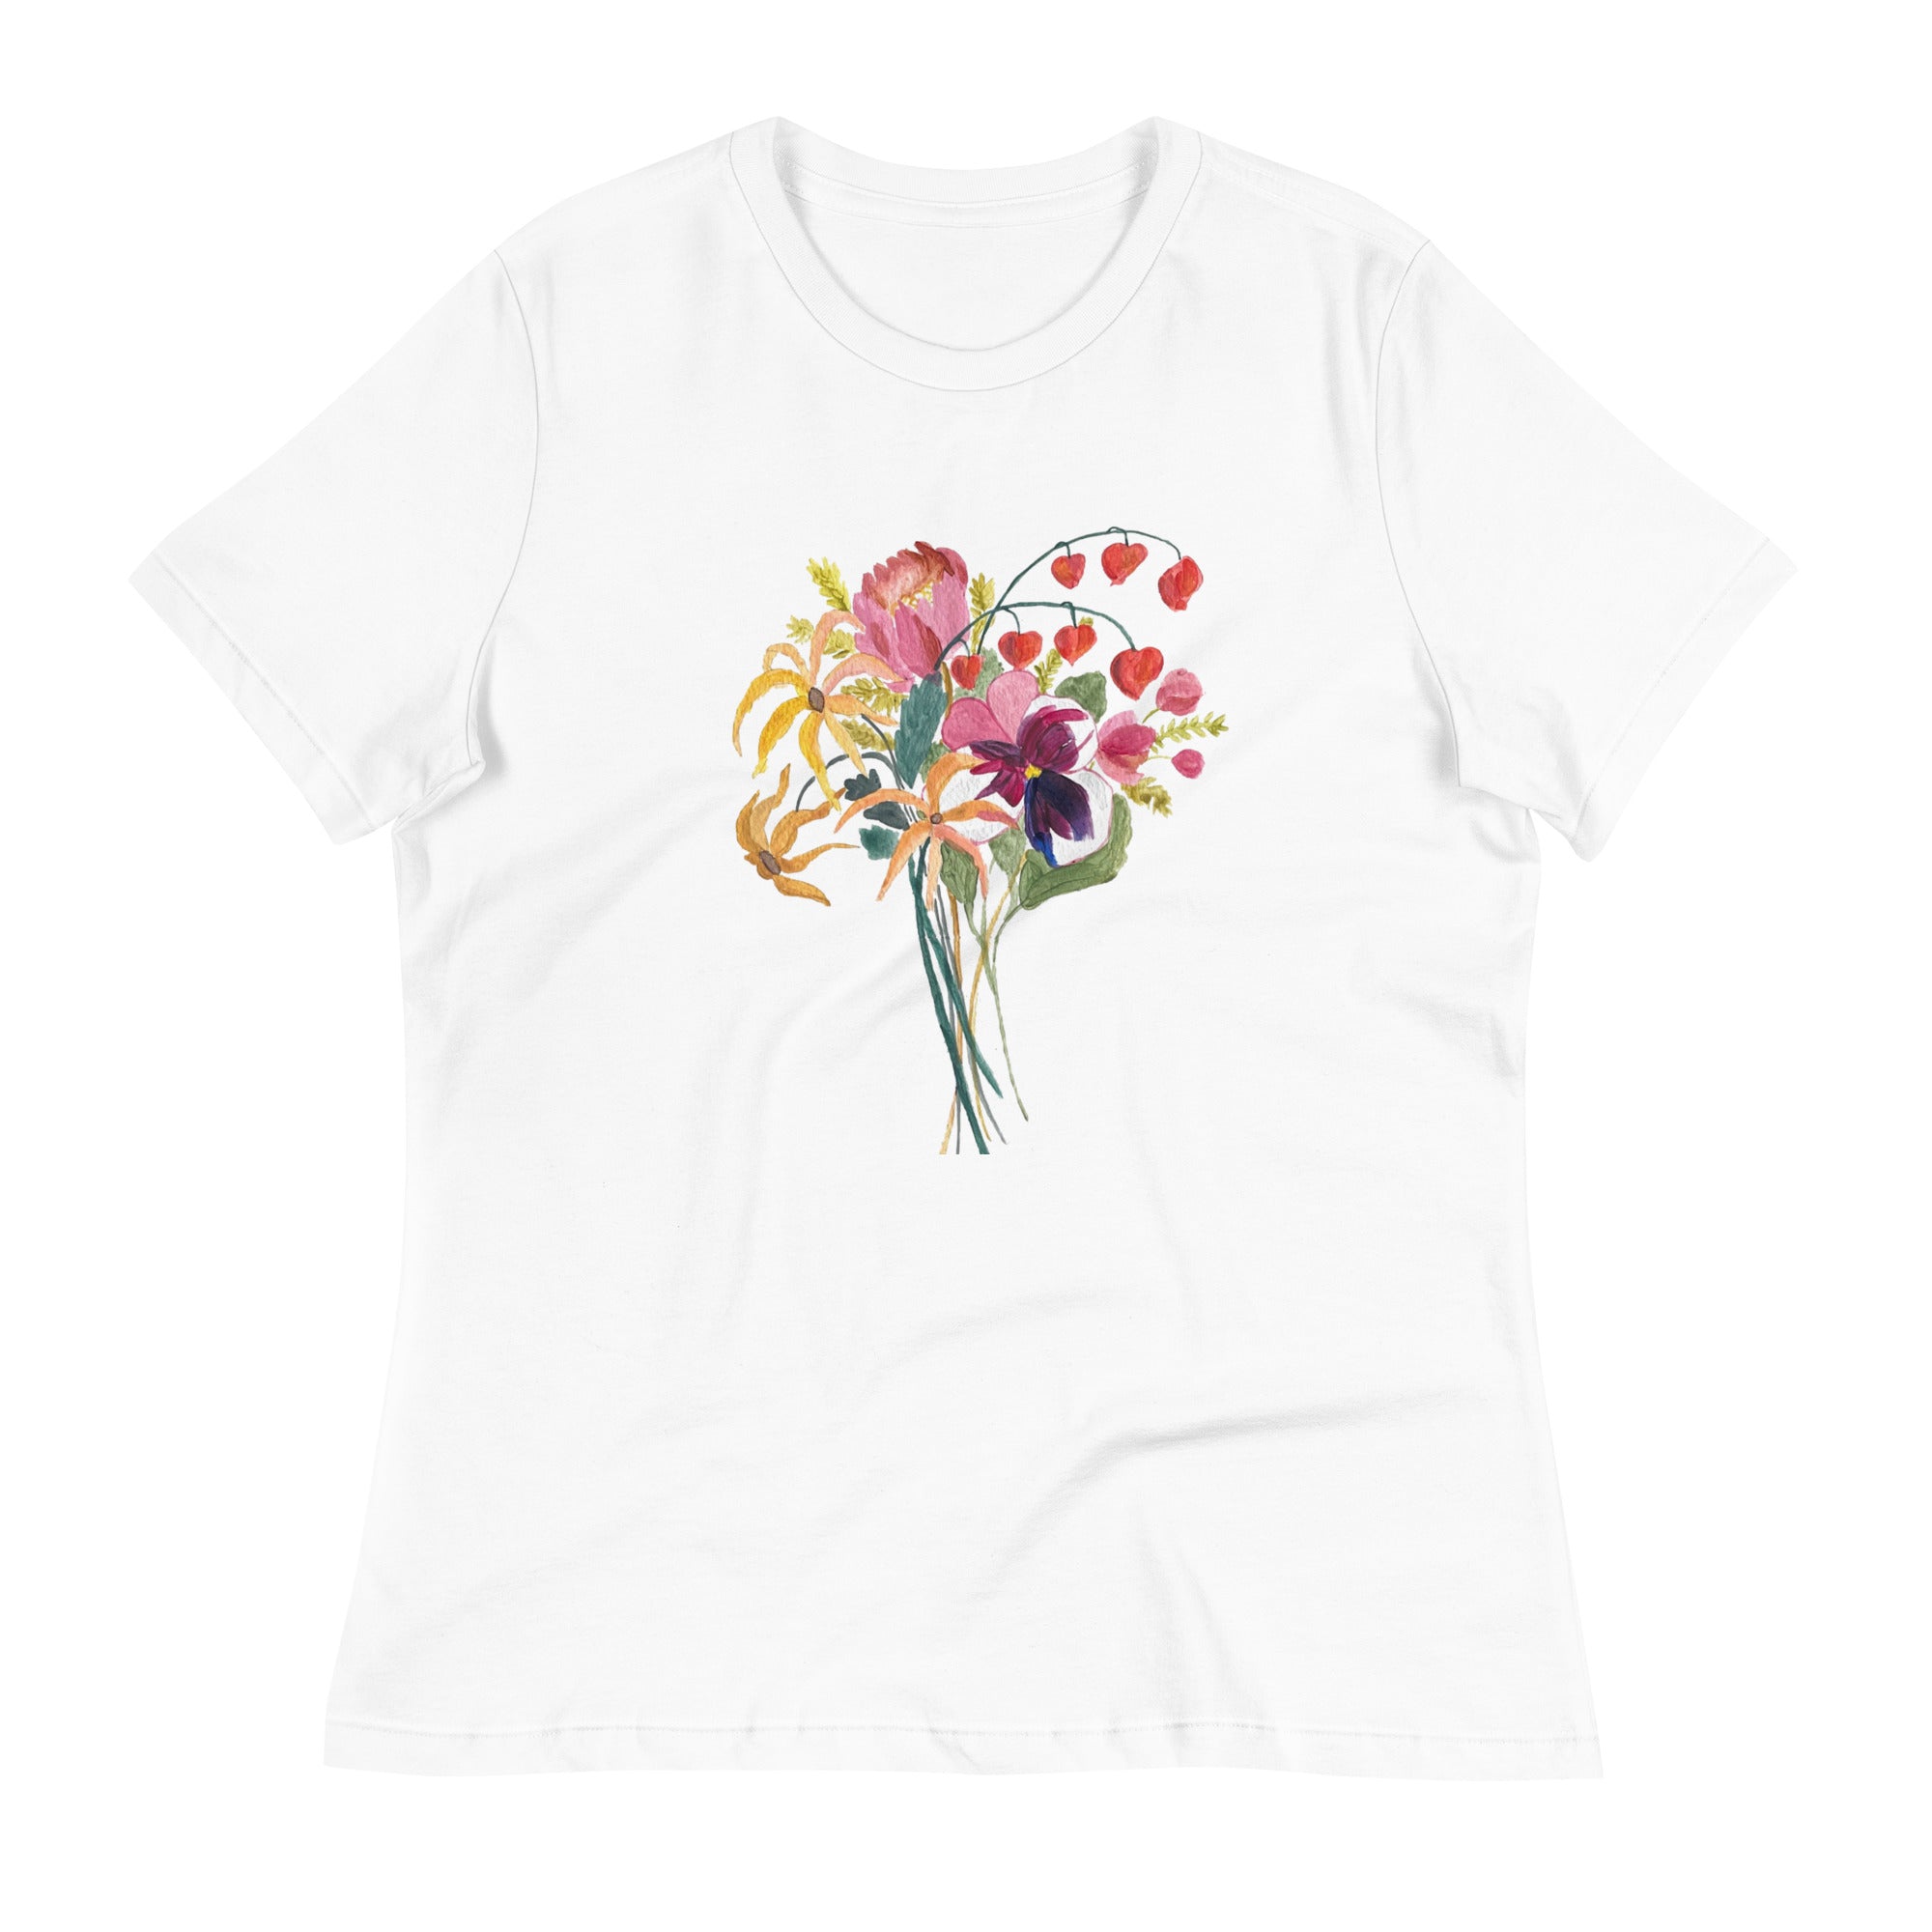 'Bouquet me up' short sleeve t-shirt